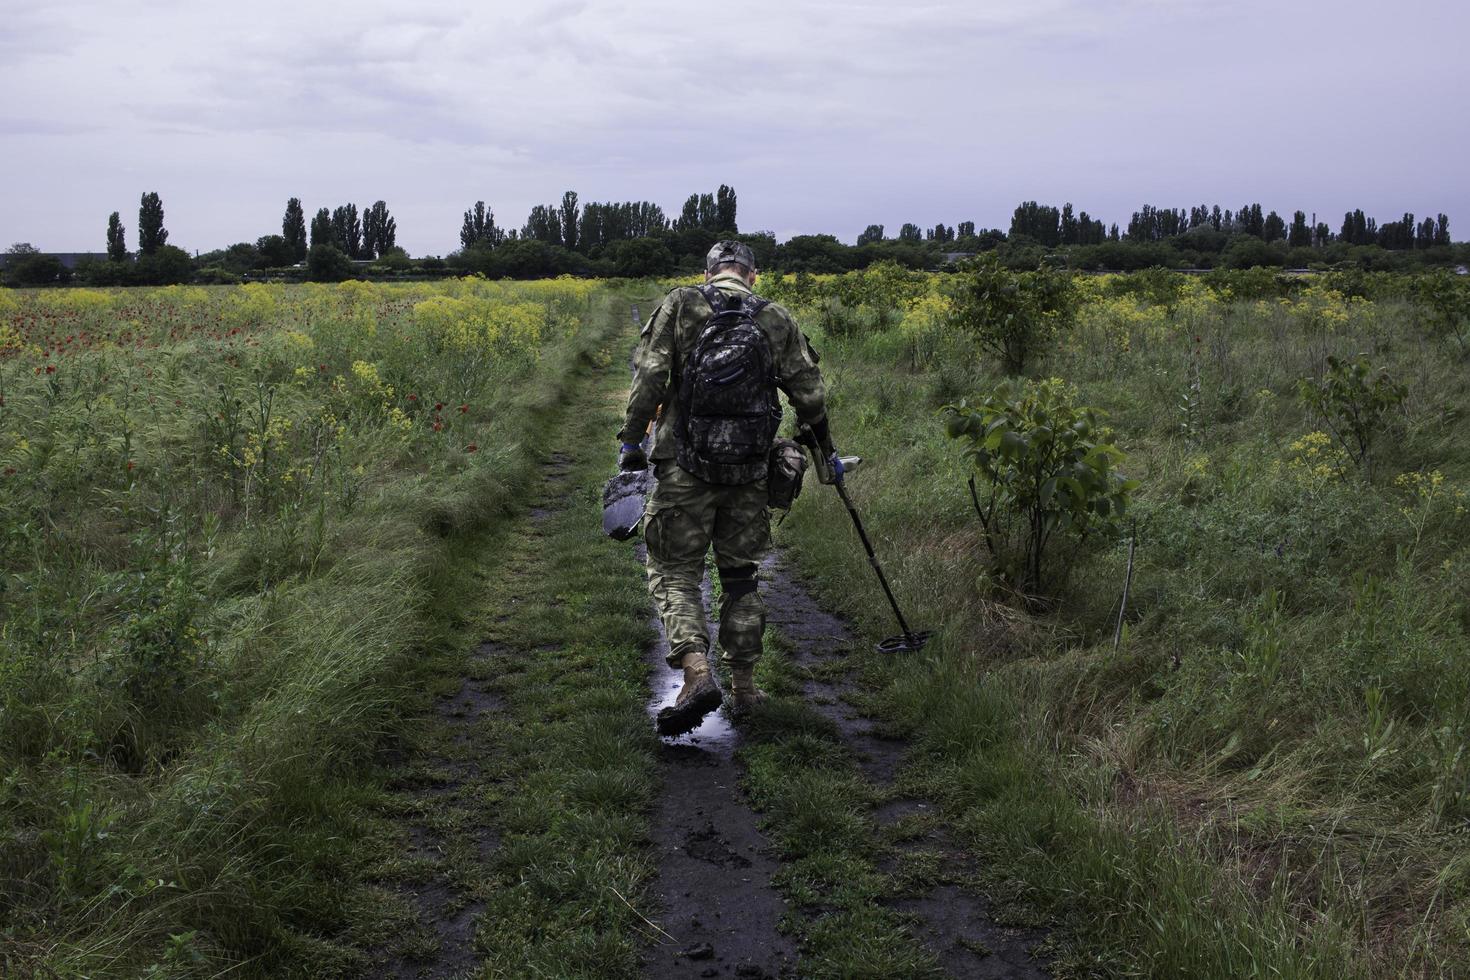 Soldat mit einem Metalldetektor in Feldern foto